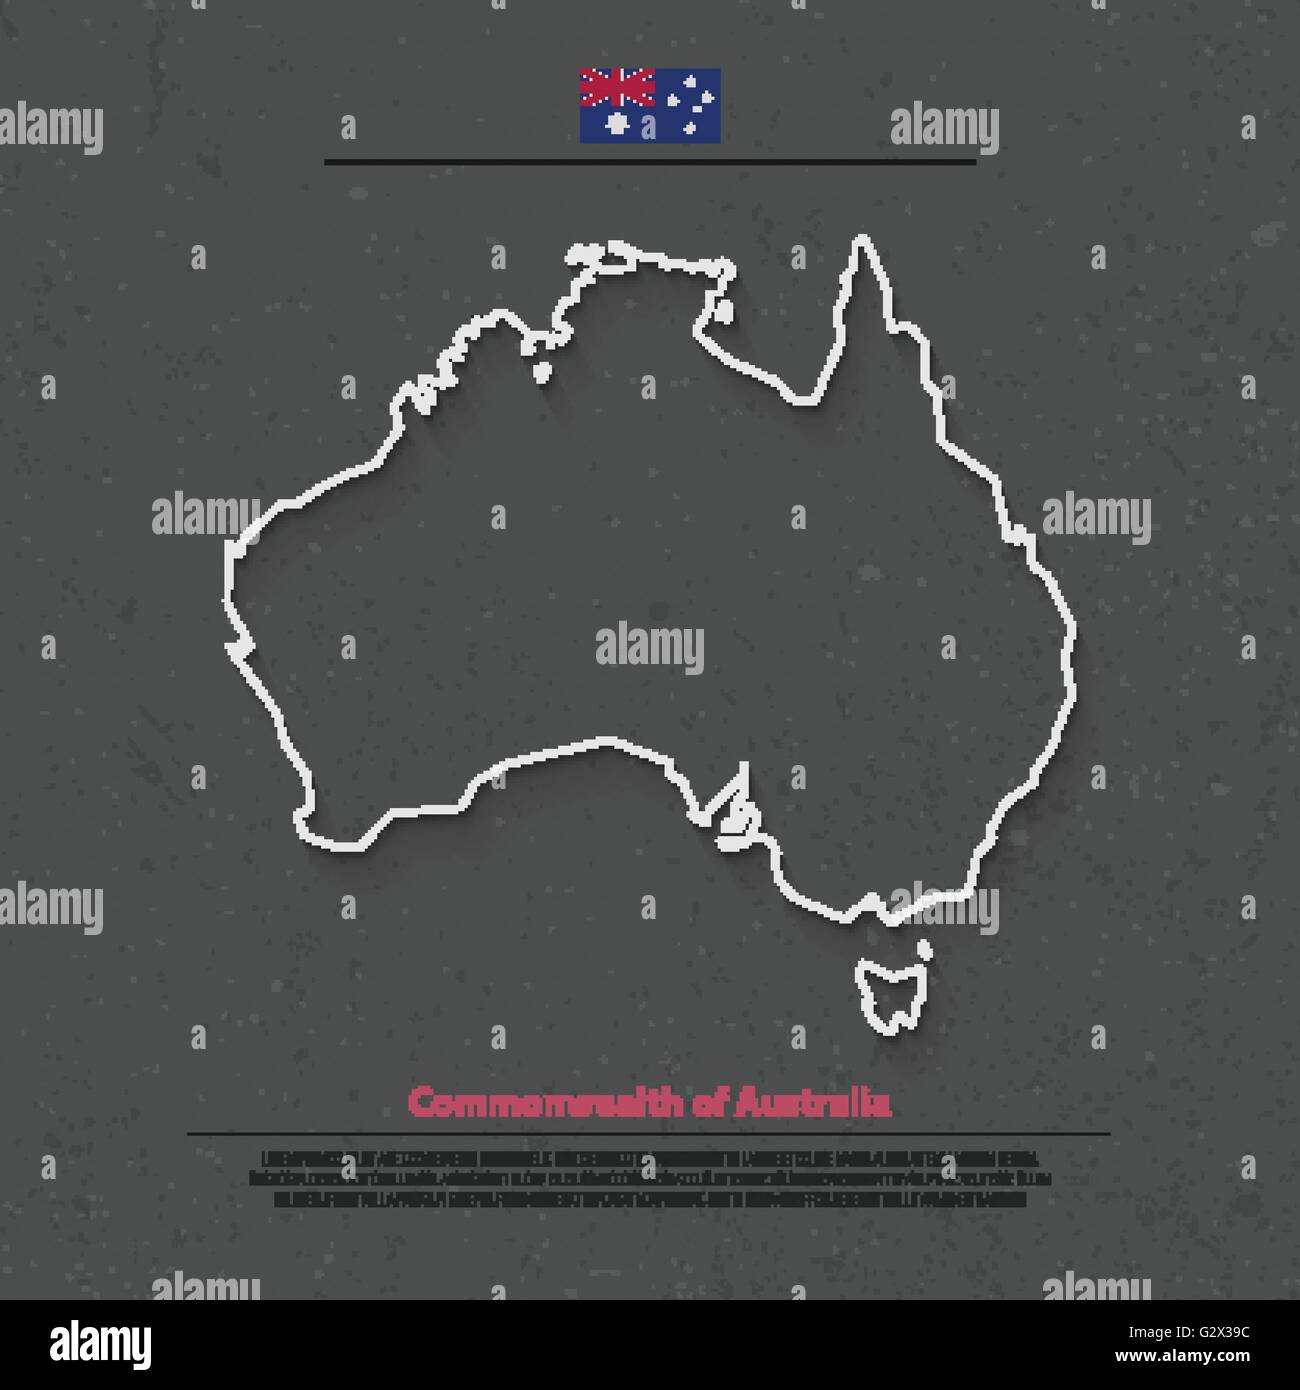 La carte isolée du Commonwealth de l'Australie et de drapeau officiel icons. vector continent politique australienne ligne fine carte. Aussie geog Illustration de Vecteur